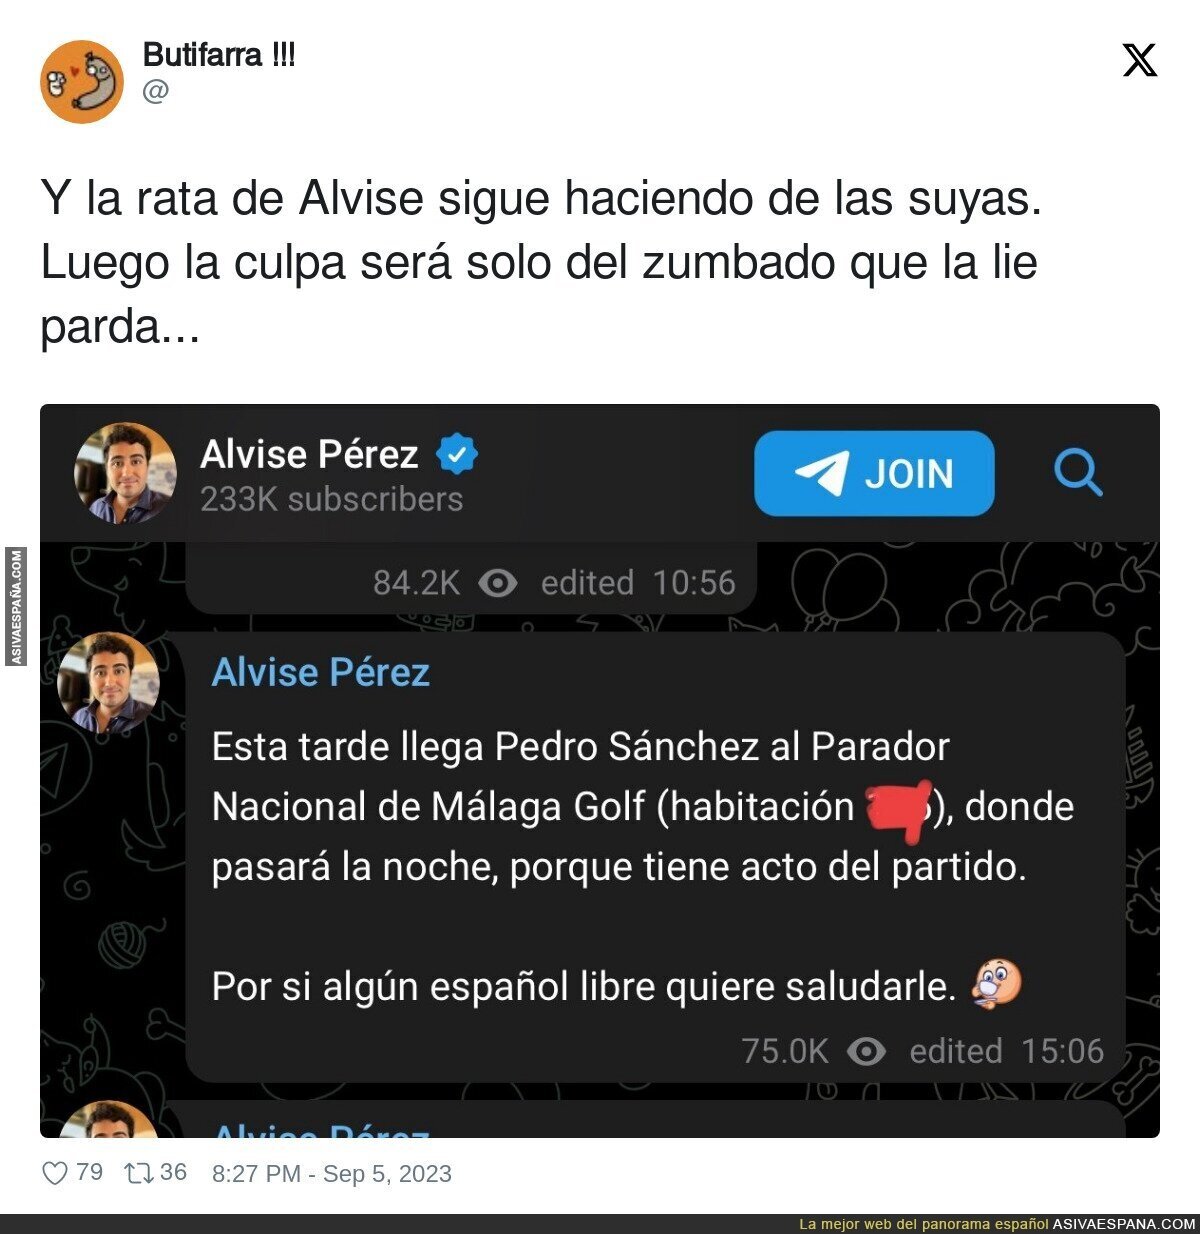 Así funciona Alvise Pérez